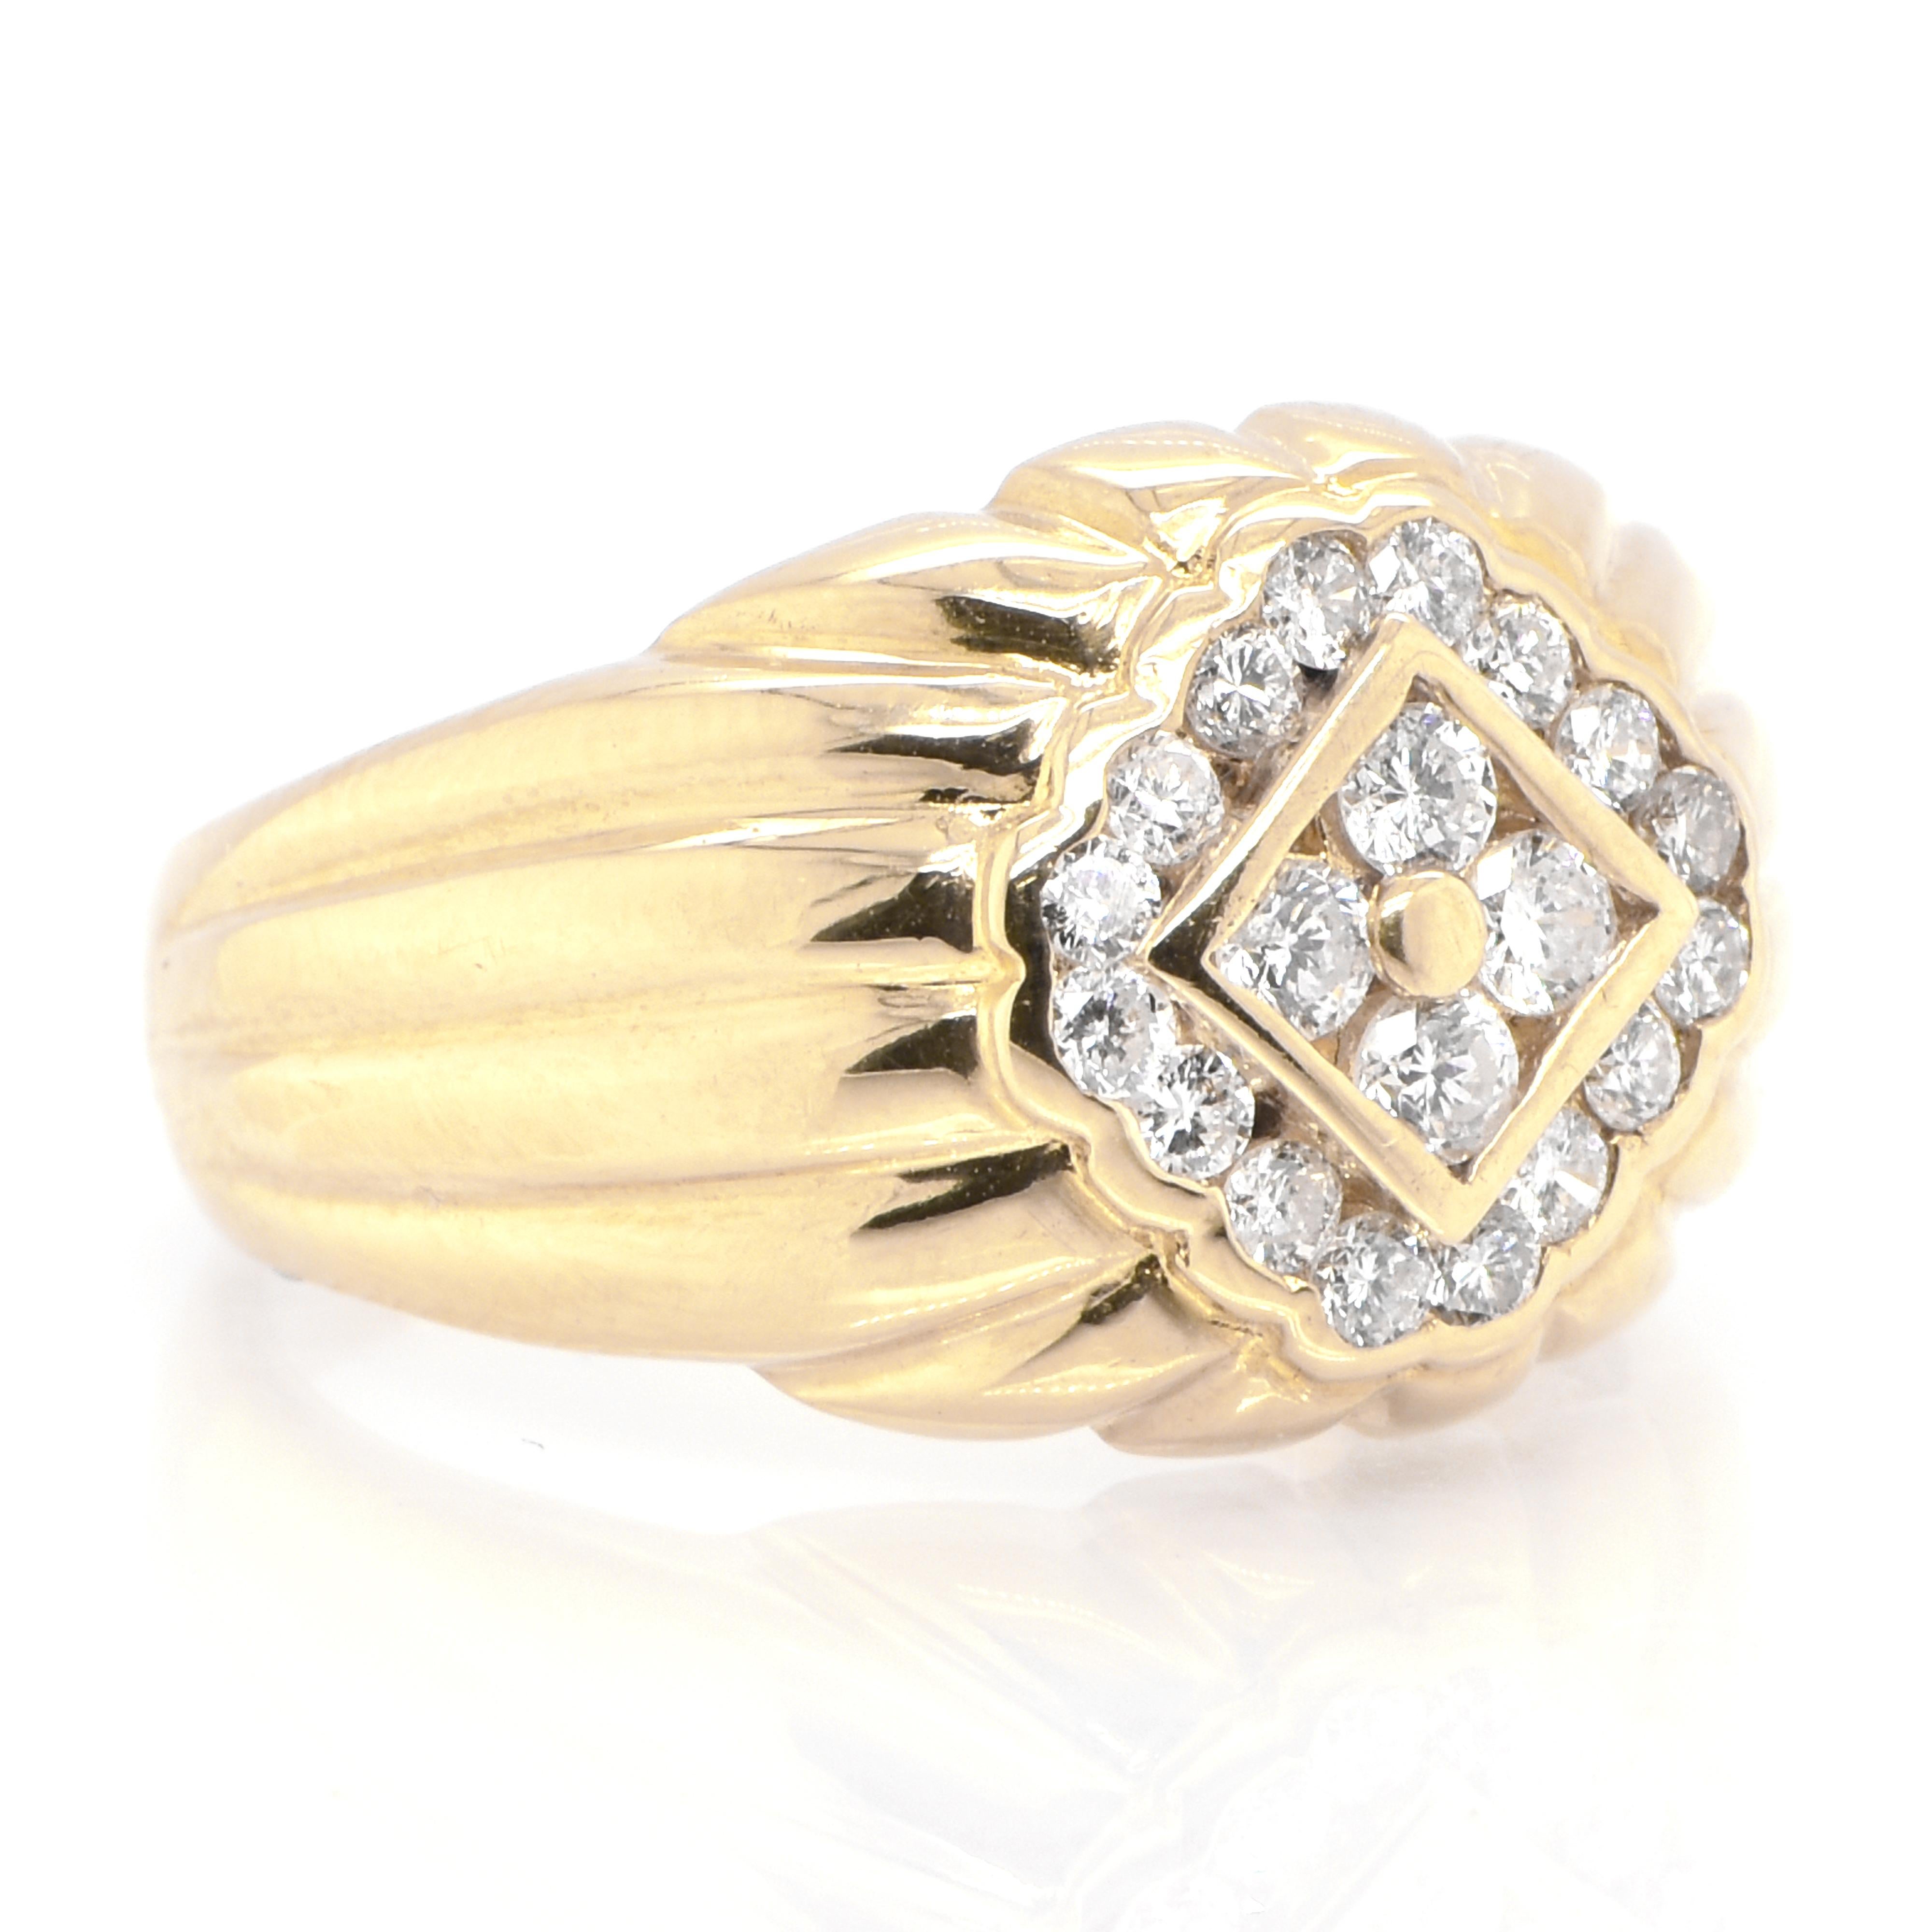 Ein wunderschöner Ring mit 0,52 Karat Melee-Diamanten in 18 Karat Gelbgold. Diamanten werden seit Tausenden von Jahren in der Geschichte der Menschheit als Schmuck und Wertgegenstand geschätzt. Sie werden auf der Mohs-Härteskala mit 10 bewertet und